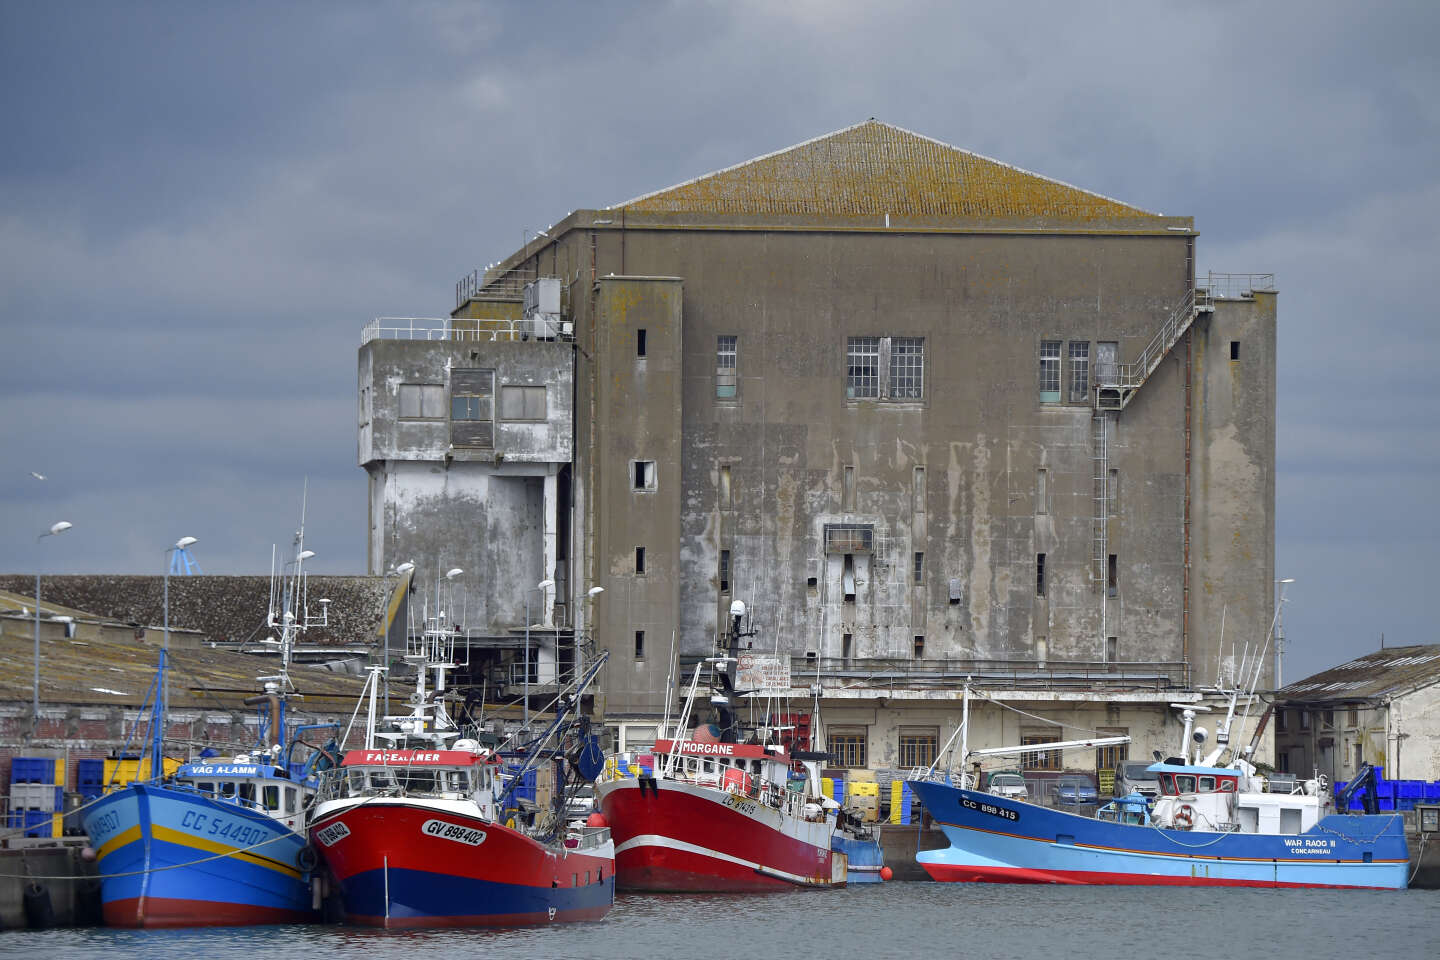 Le projet du port de Lorient d’importer du poisson par avion depuis le sultanat d’Oman fait polémique